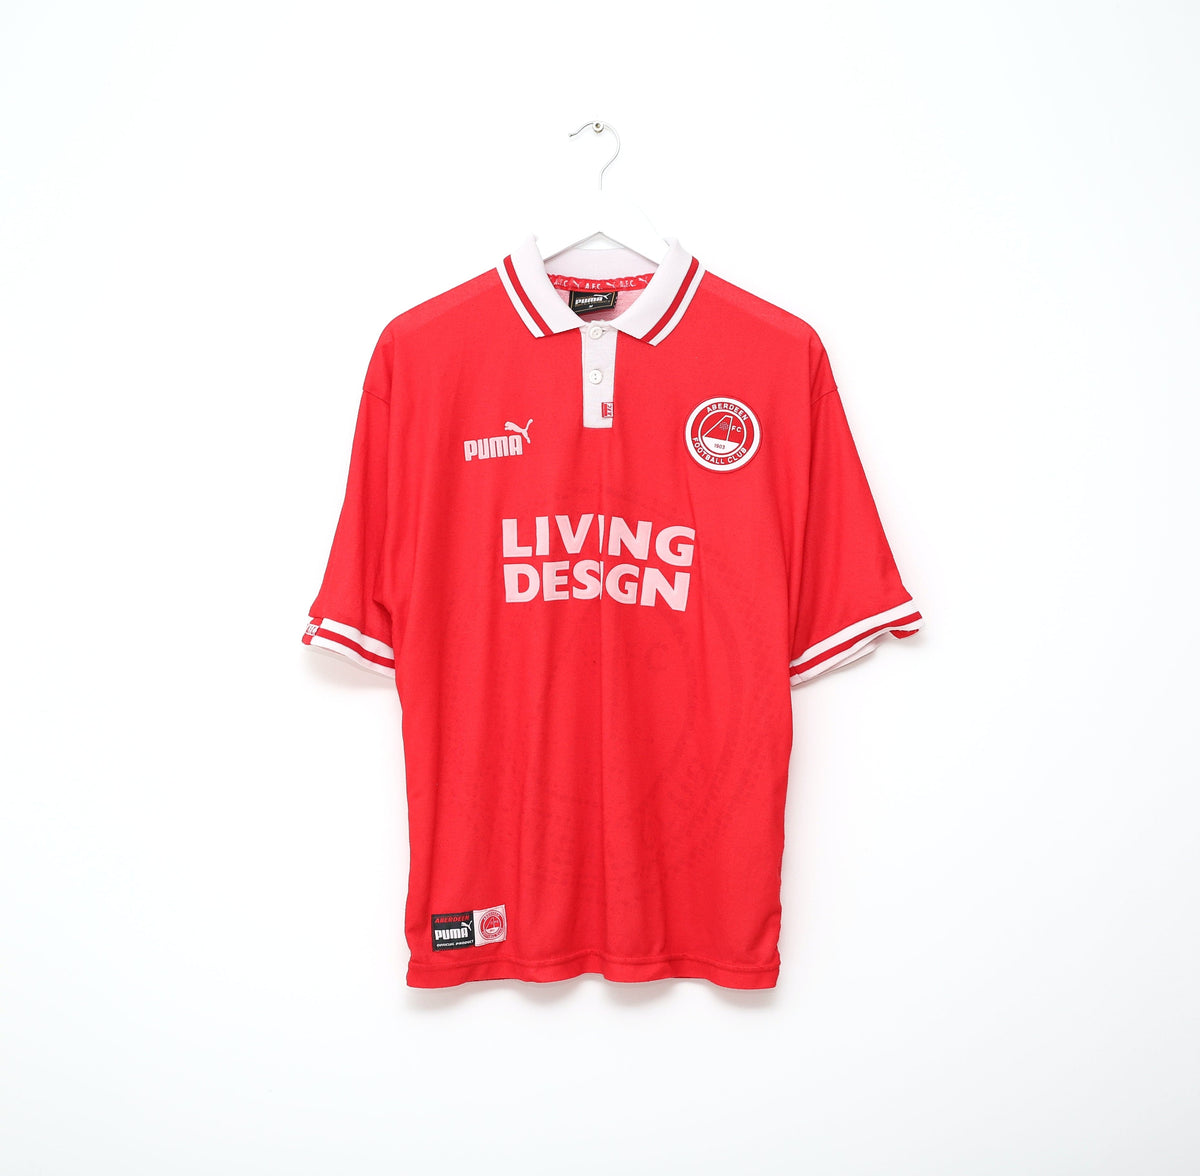 1997/98 ABERDEEN Vintage PUMA Home Football Shirt Jersey (M)